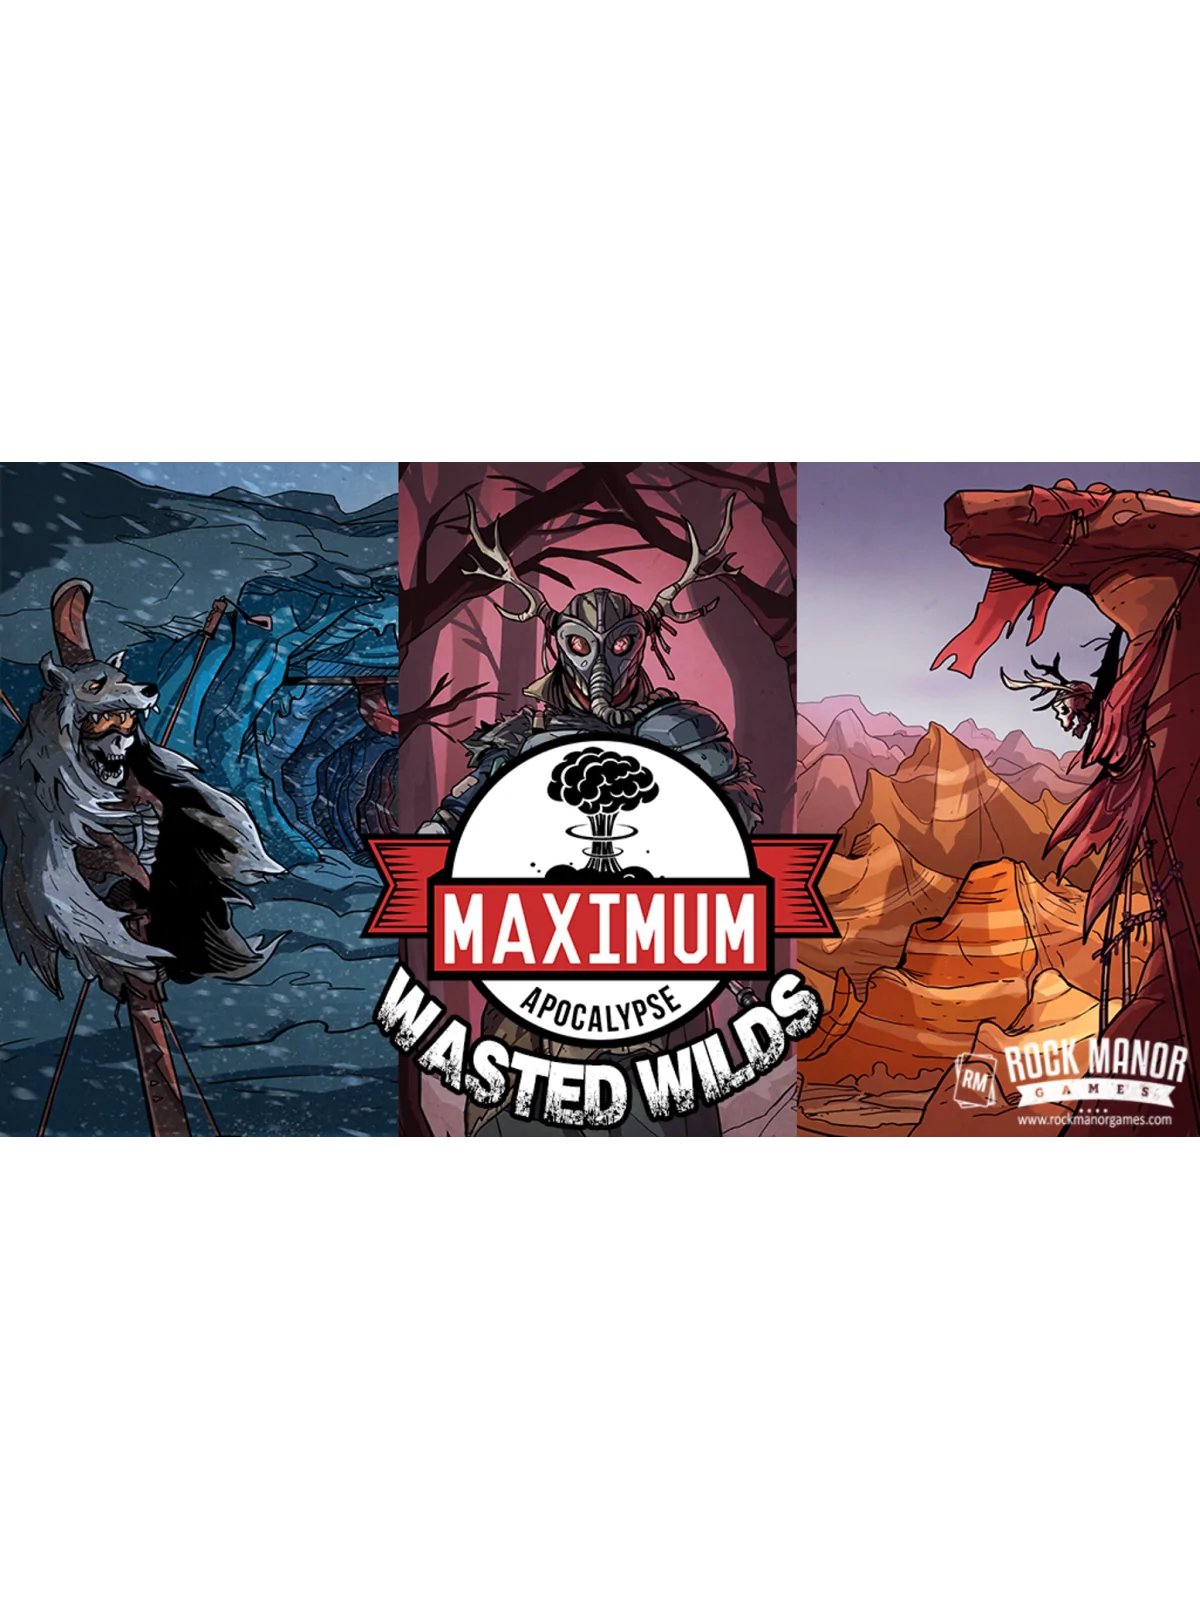 Comprar Maximum Apocalypse: Wasted Wilds barato al mejor precio 79,99 